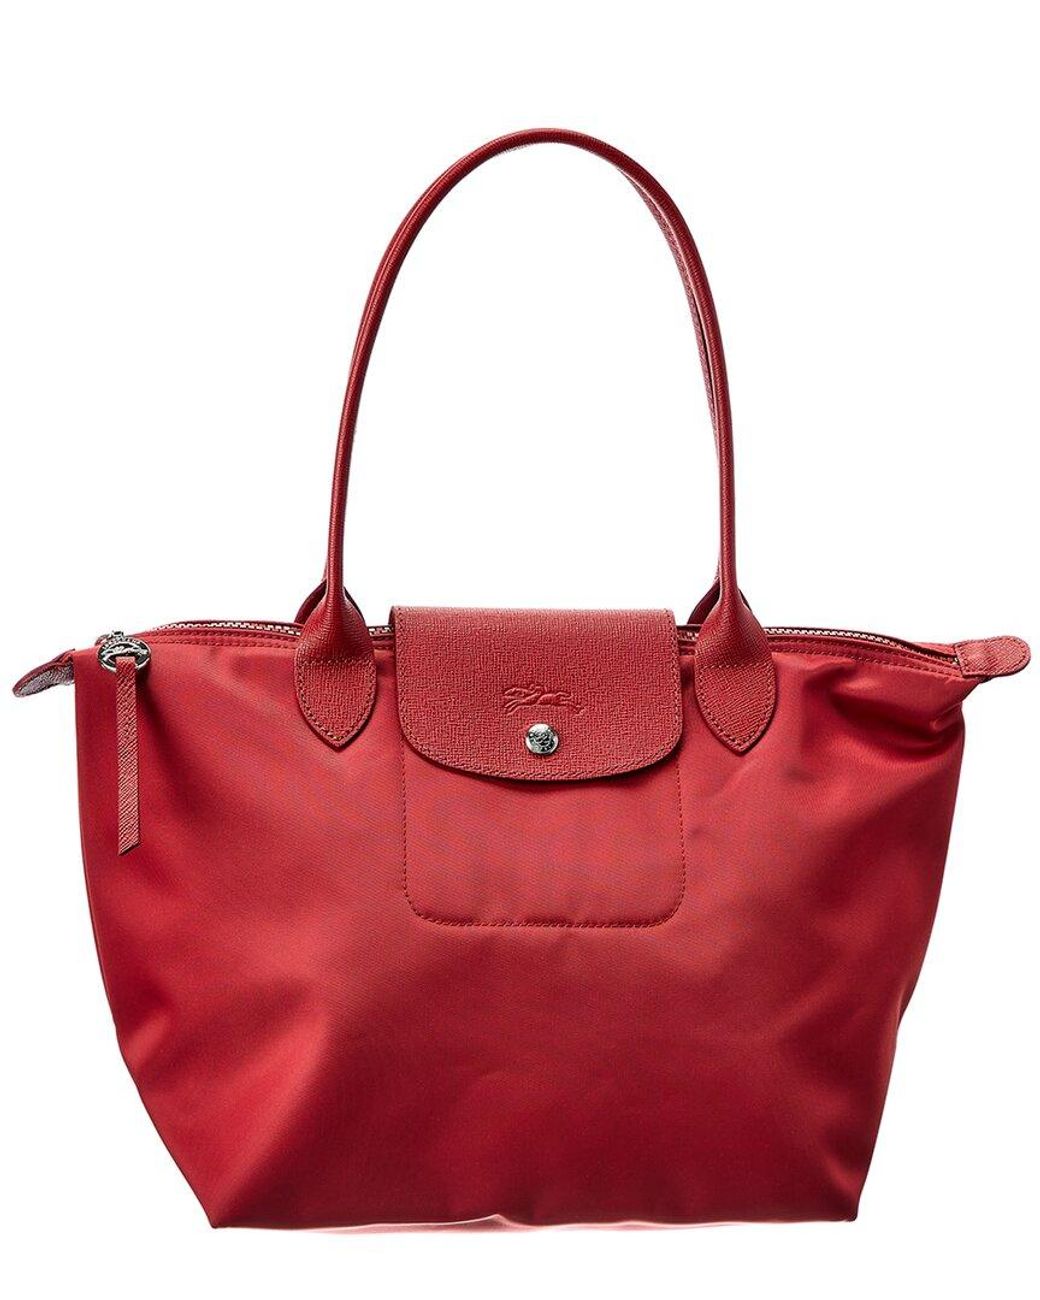 Is Longchamp's Cuir de Russie The Perfect Bucket Bag?